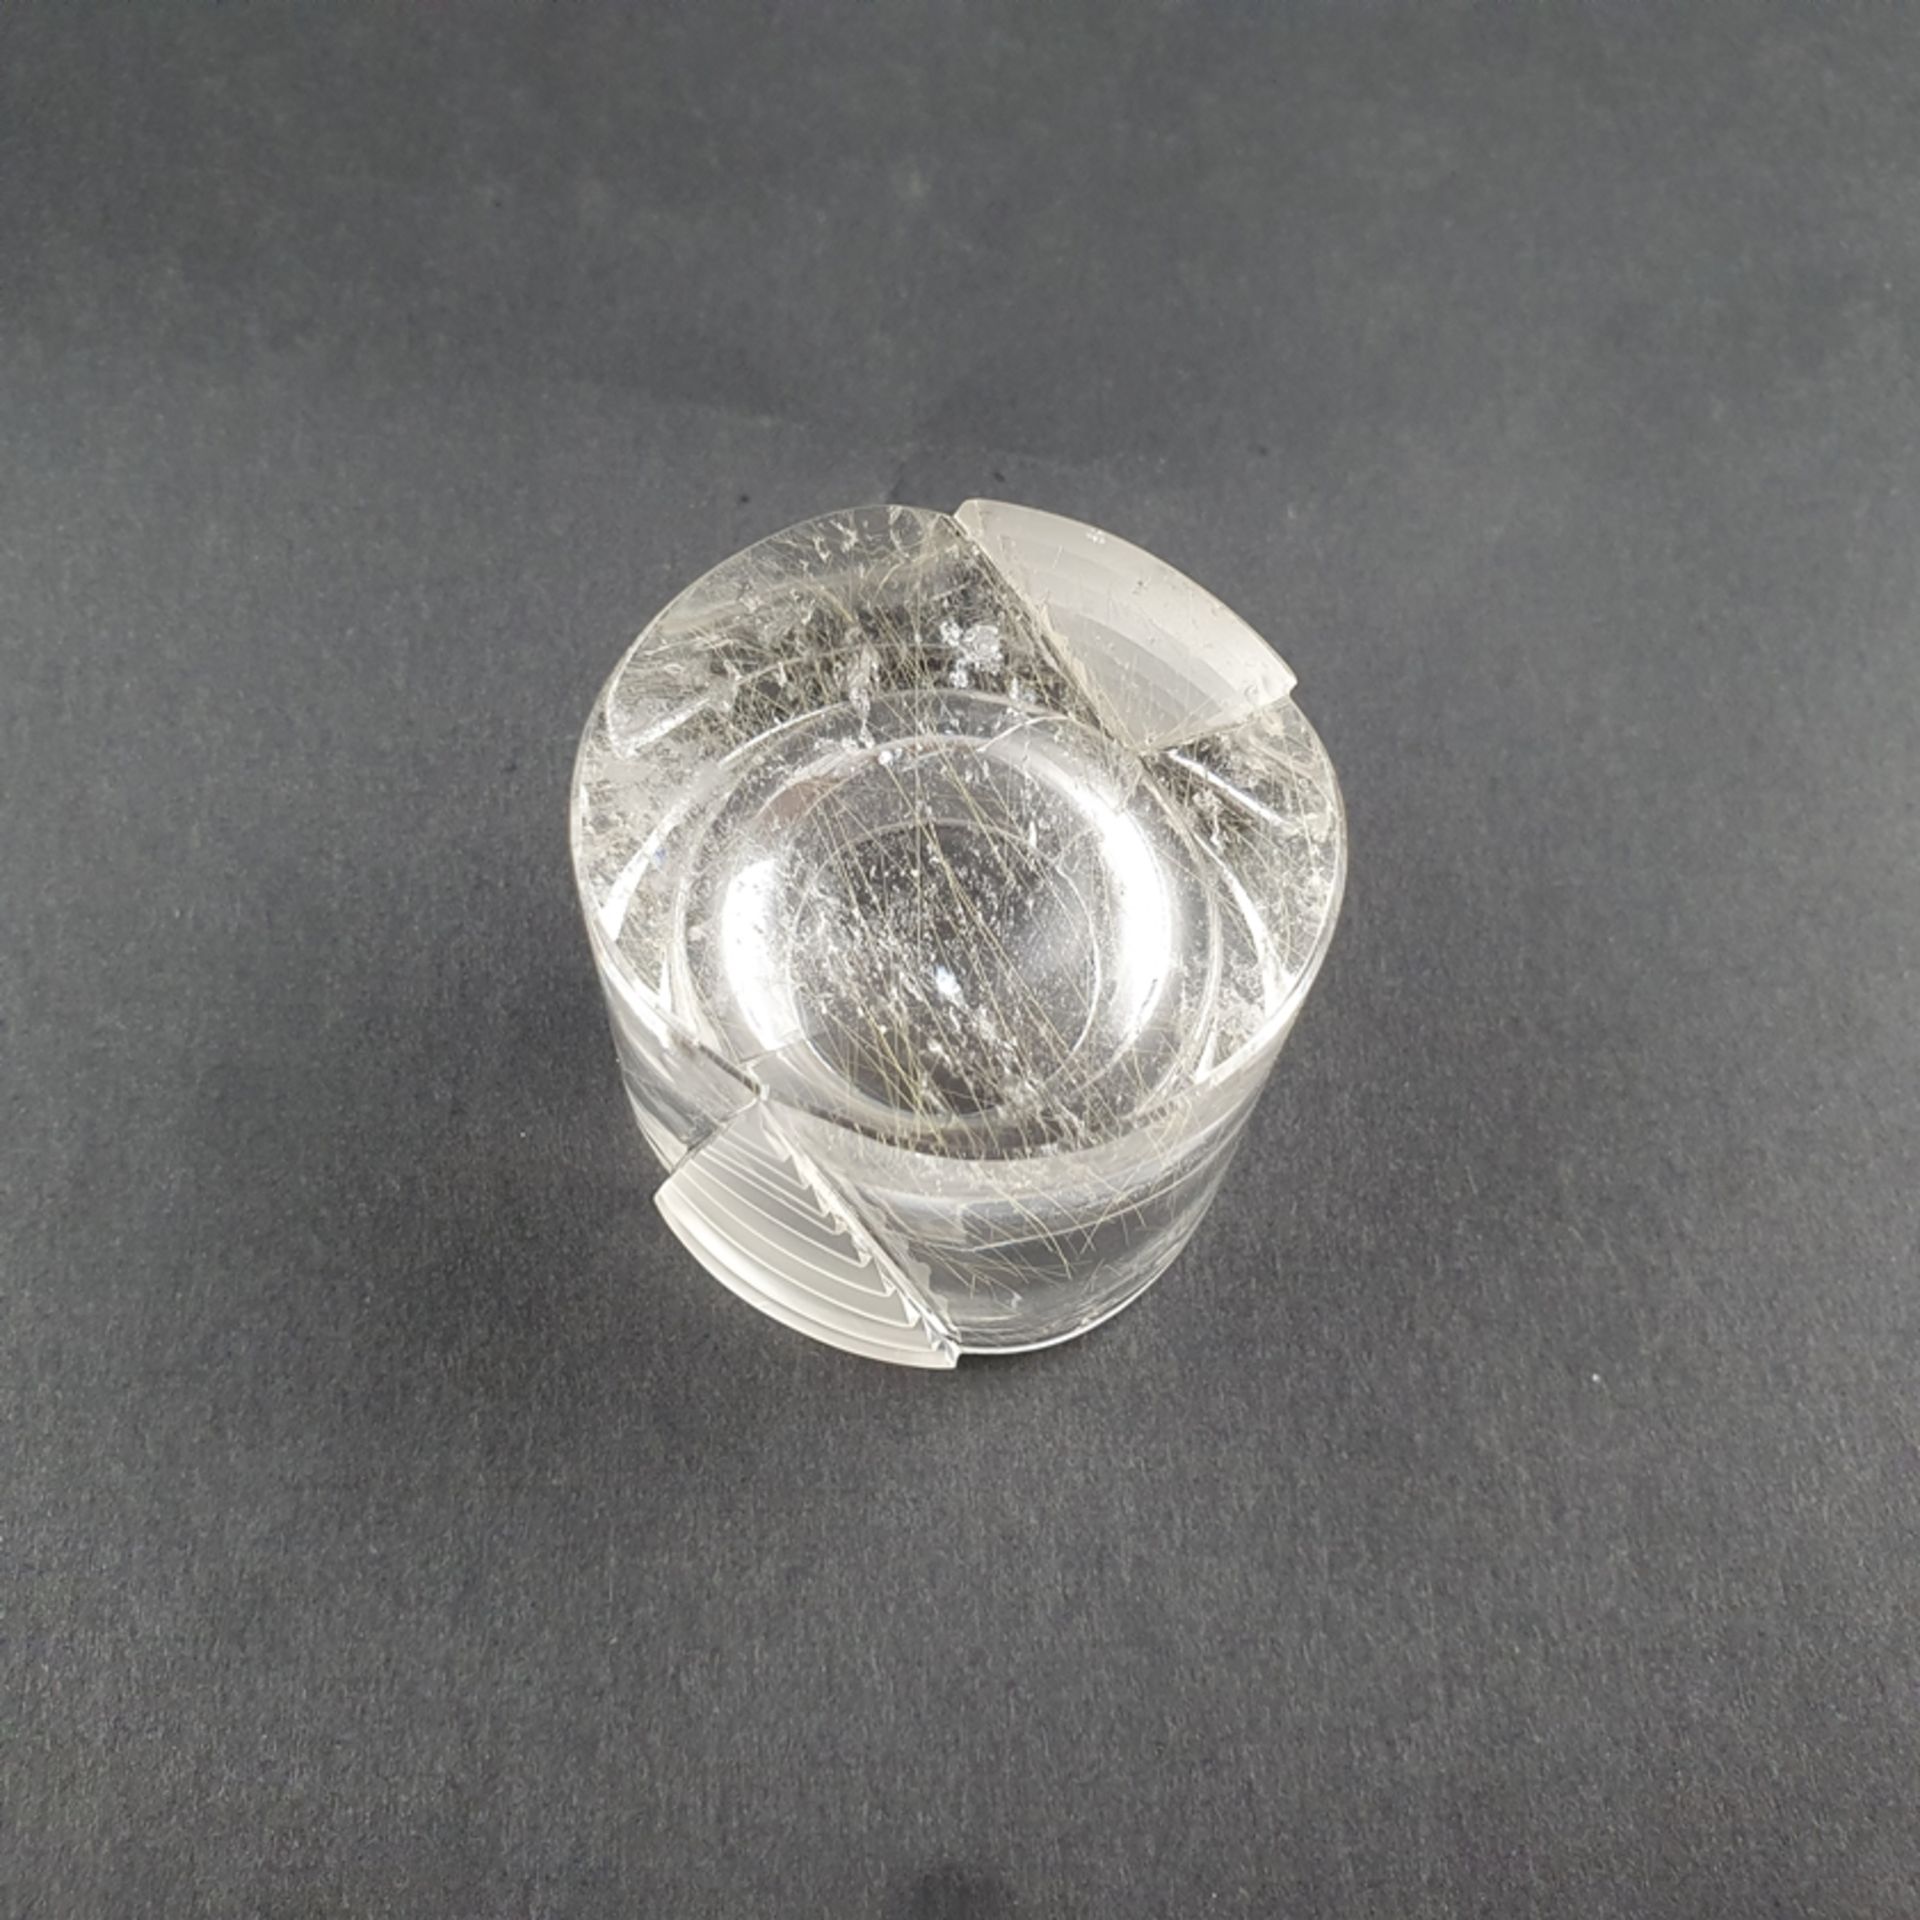 Digestifglas aus Bergkristall - ATELIER MUNSTEINER, Stipshausen (nahe Idar-Oberstein), zylindrische - Bild 4 aus 4